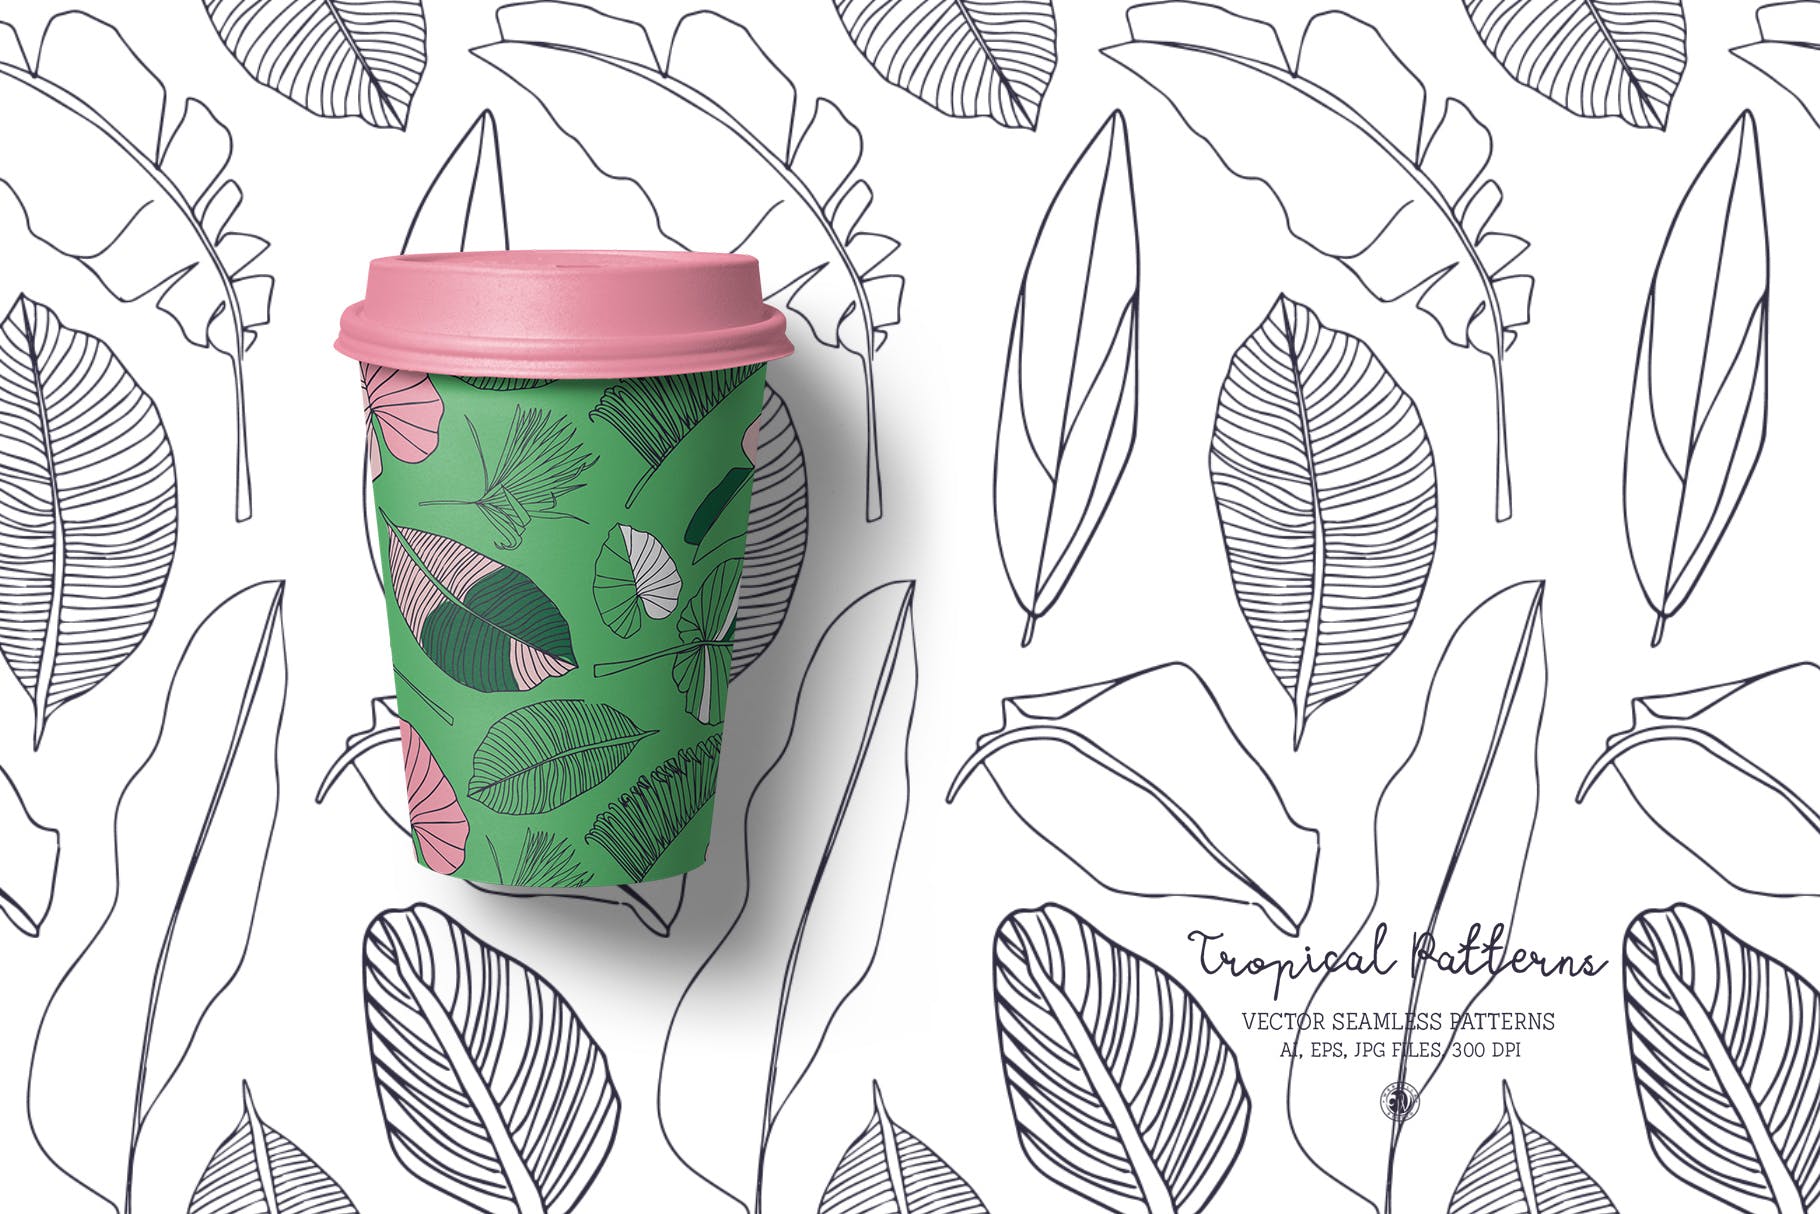 热带植物手绘图案纹样背景素材 Tropical Patterns插图(4)